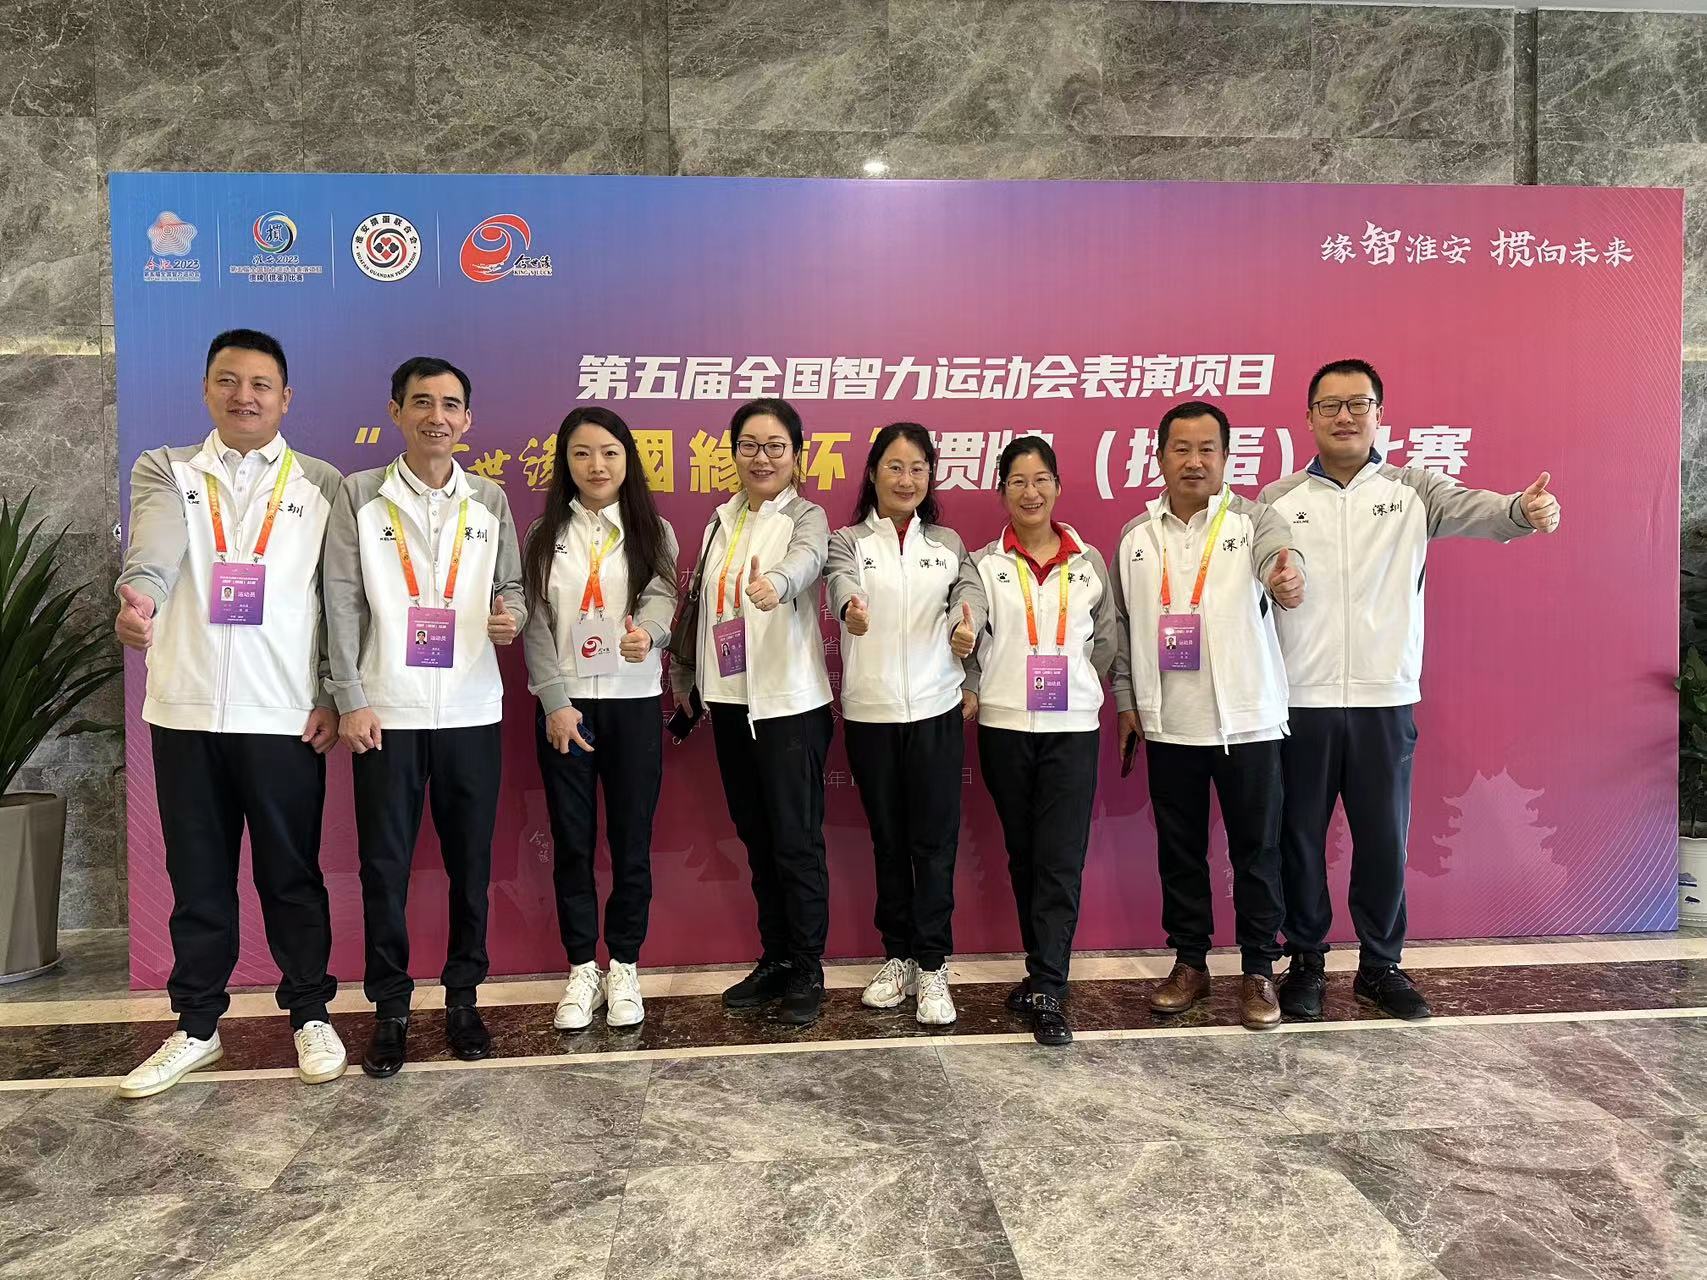 第五届全国智力运动会：掼牌（掼蛋）项目首次亮相，深圳队收获女双与混双赛殿军